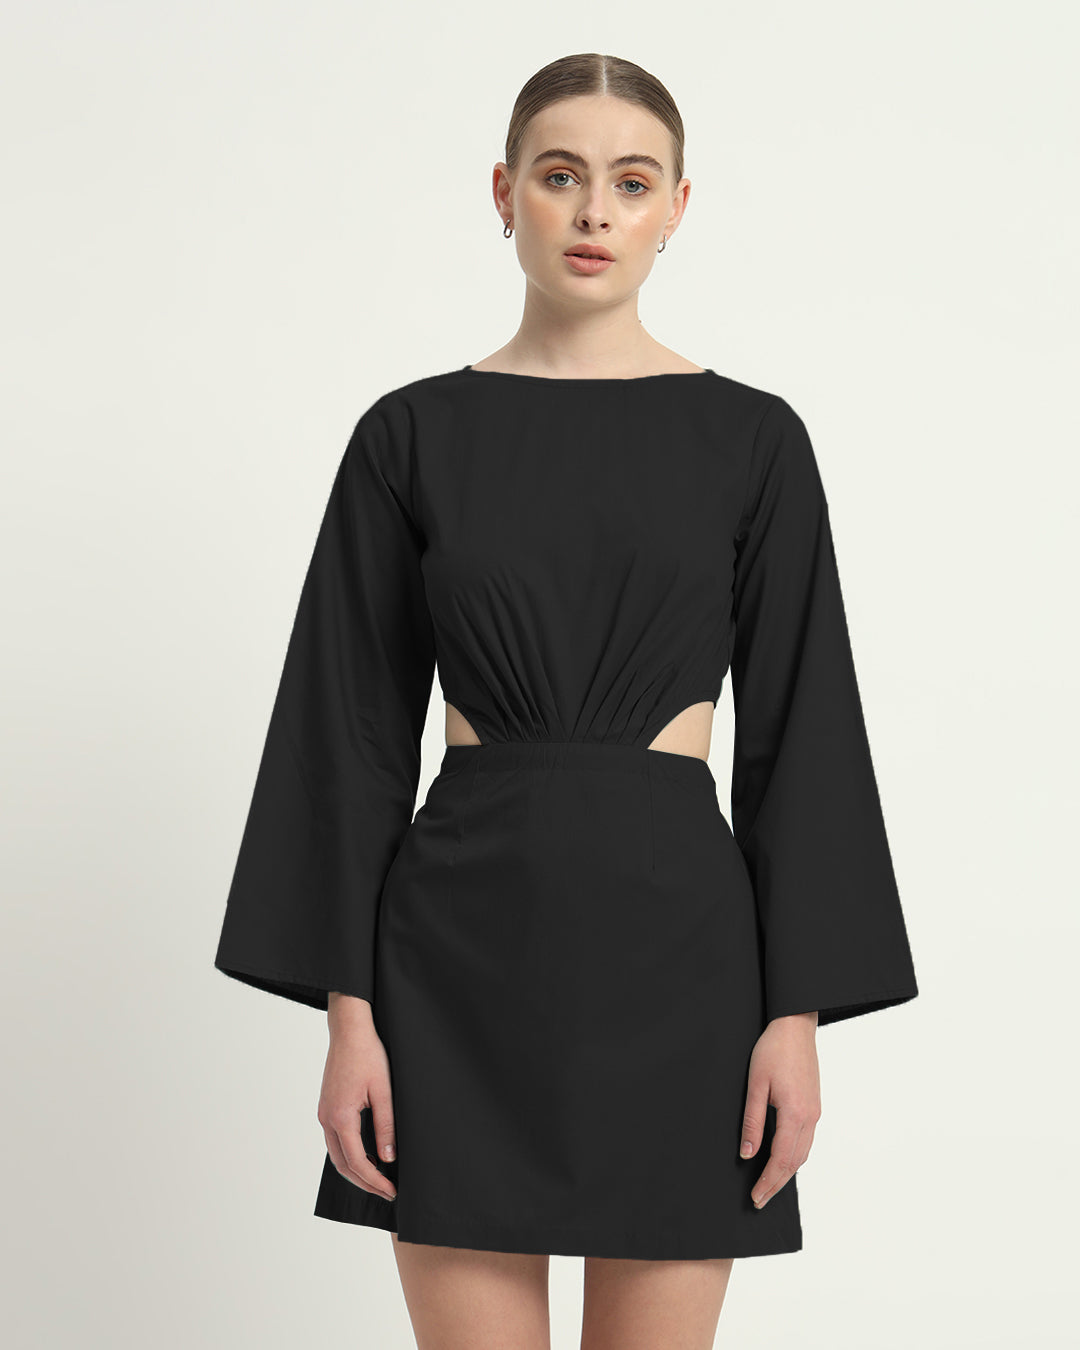 The Noir Eloy Cotton Dress